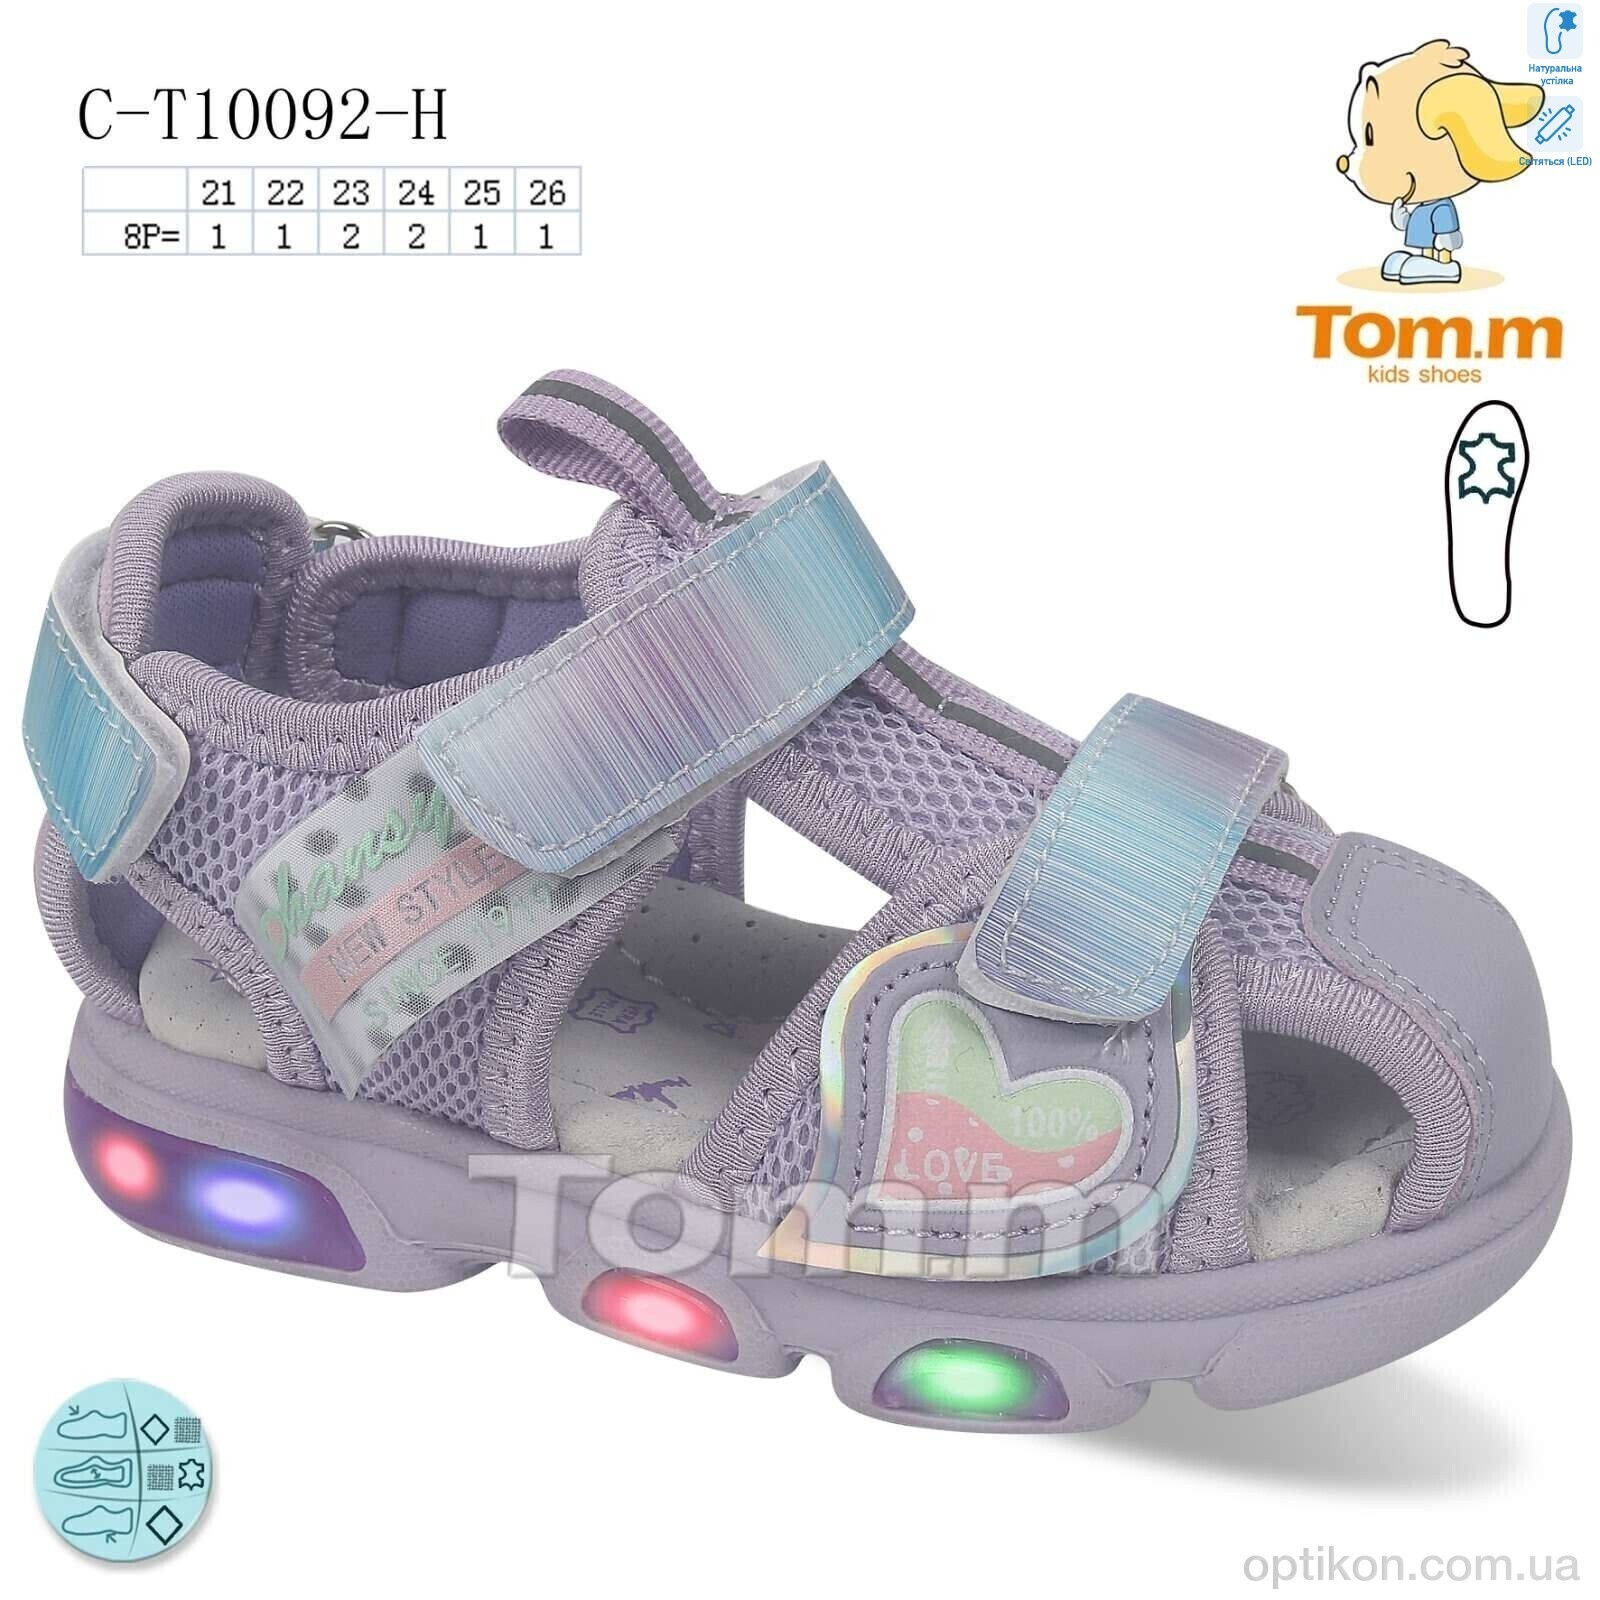 Босоніжки TOM.M C-T10092-H LED